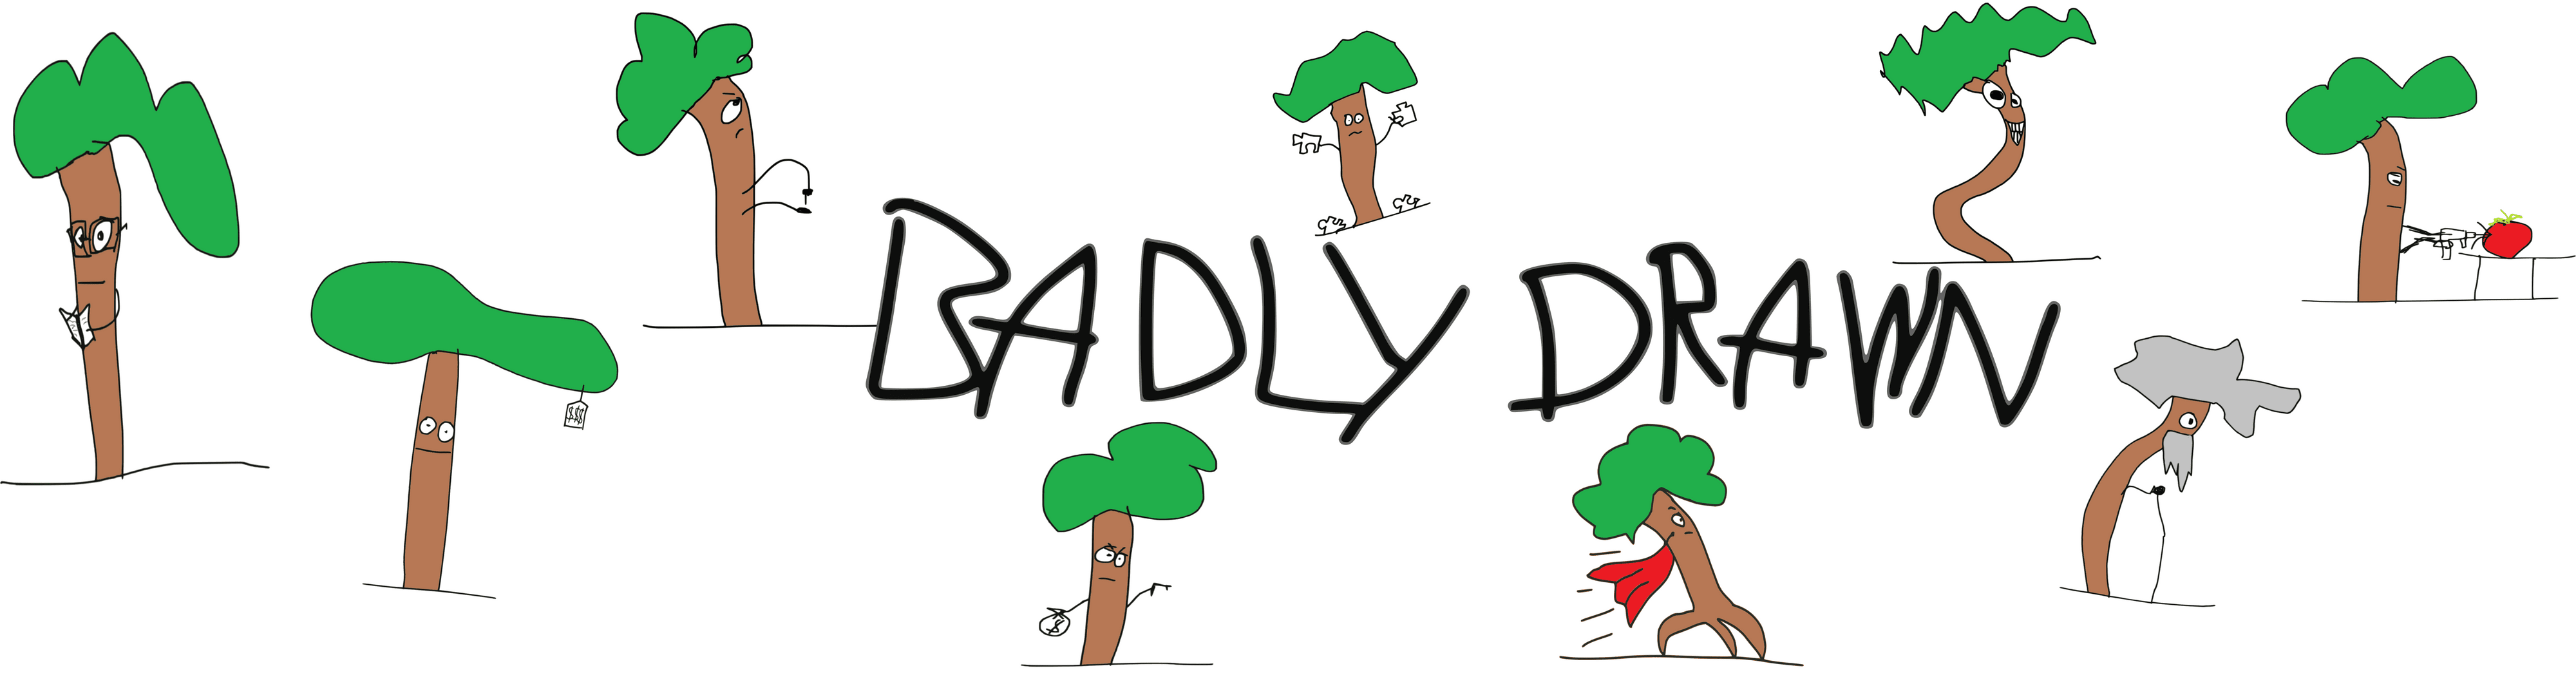 BadlyDrawn banner